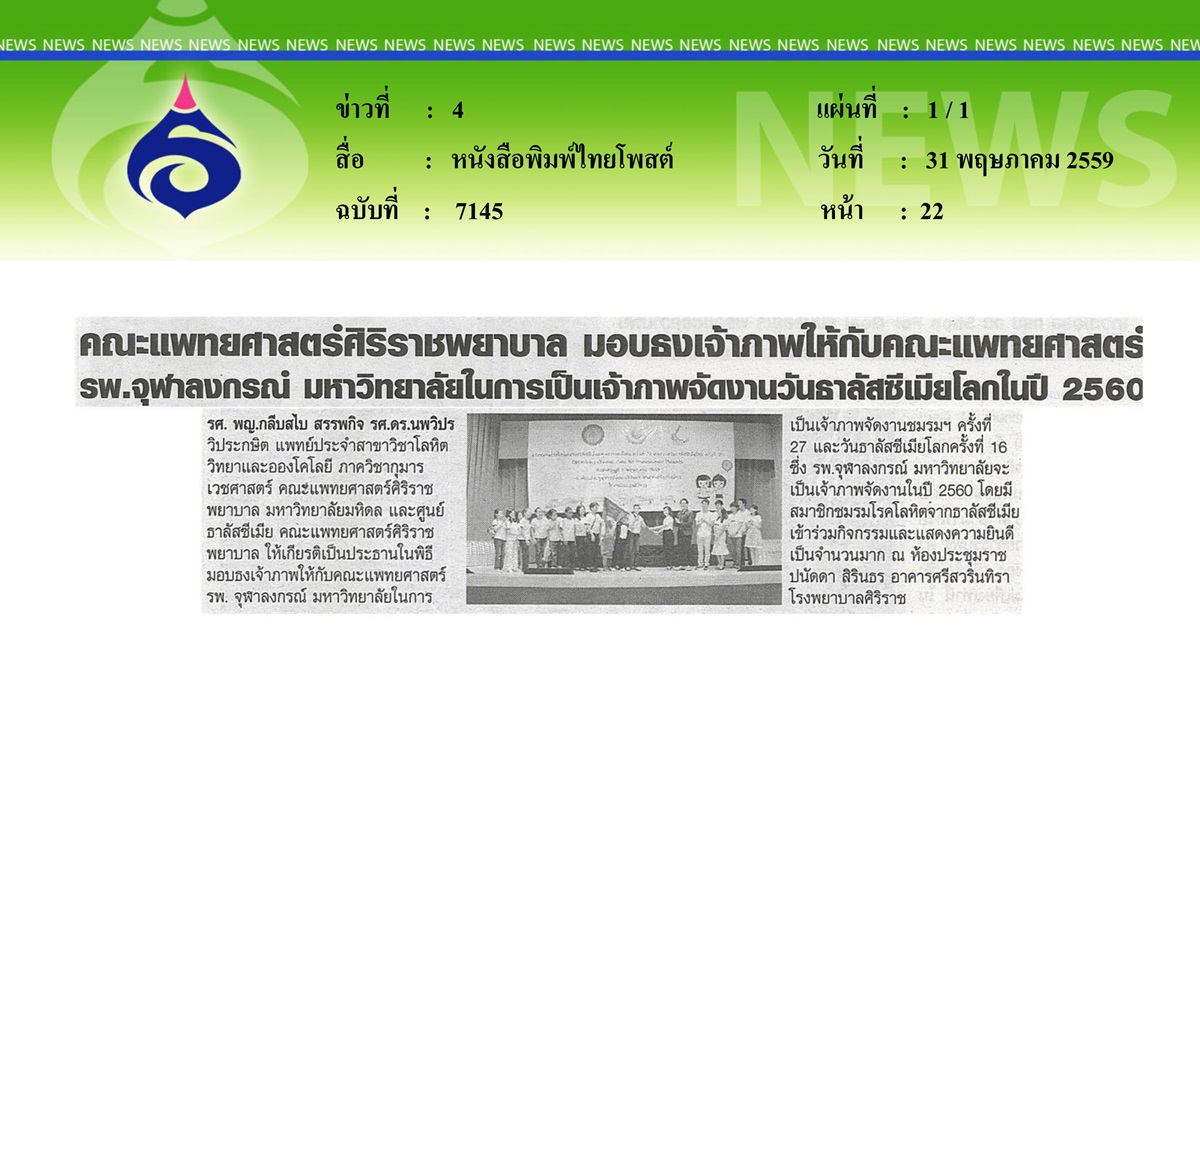 หนังสือพิมพ์ไทยโพสต์ คณะแพทยศาสตร์ศิริราชพยาบาล มอบธงเจ้าภาพให้กับคณะแพทยศาสตร์ รพ.จุฬาลงกรณ์